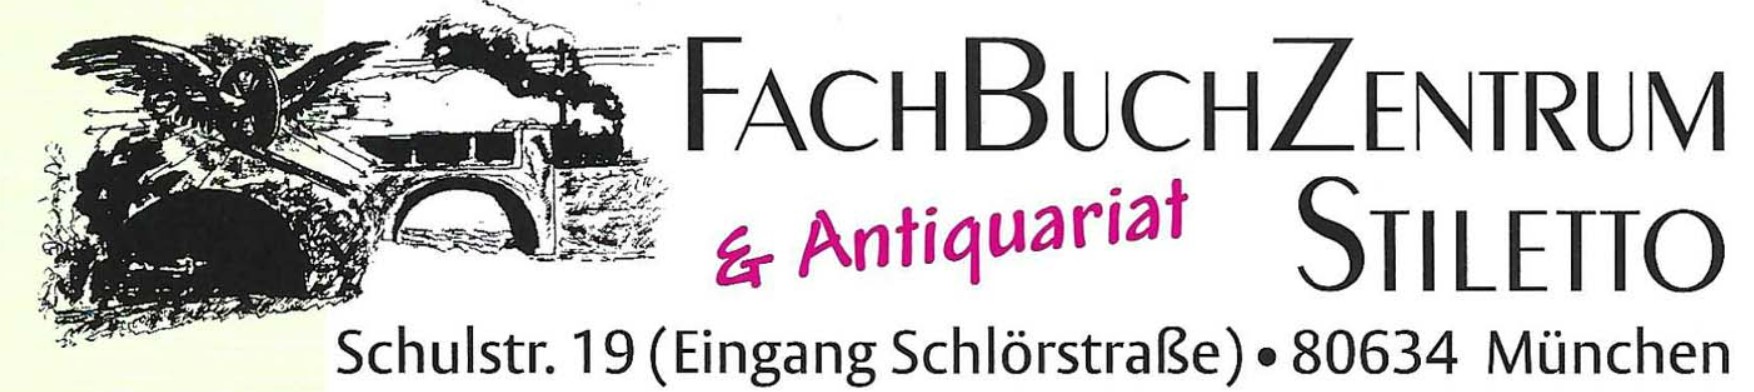 FachBuchZentrum & Antiquariat Stiletto – München 80634